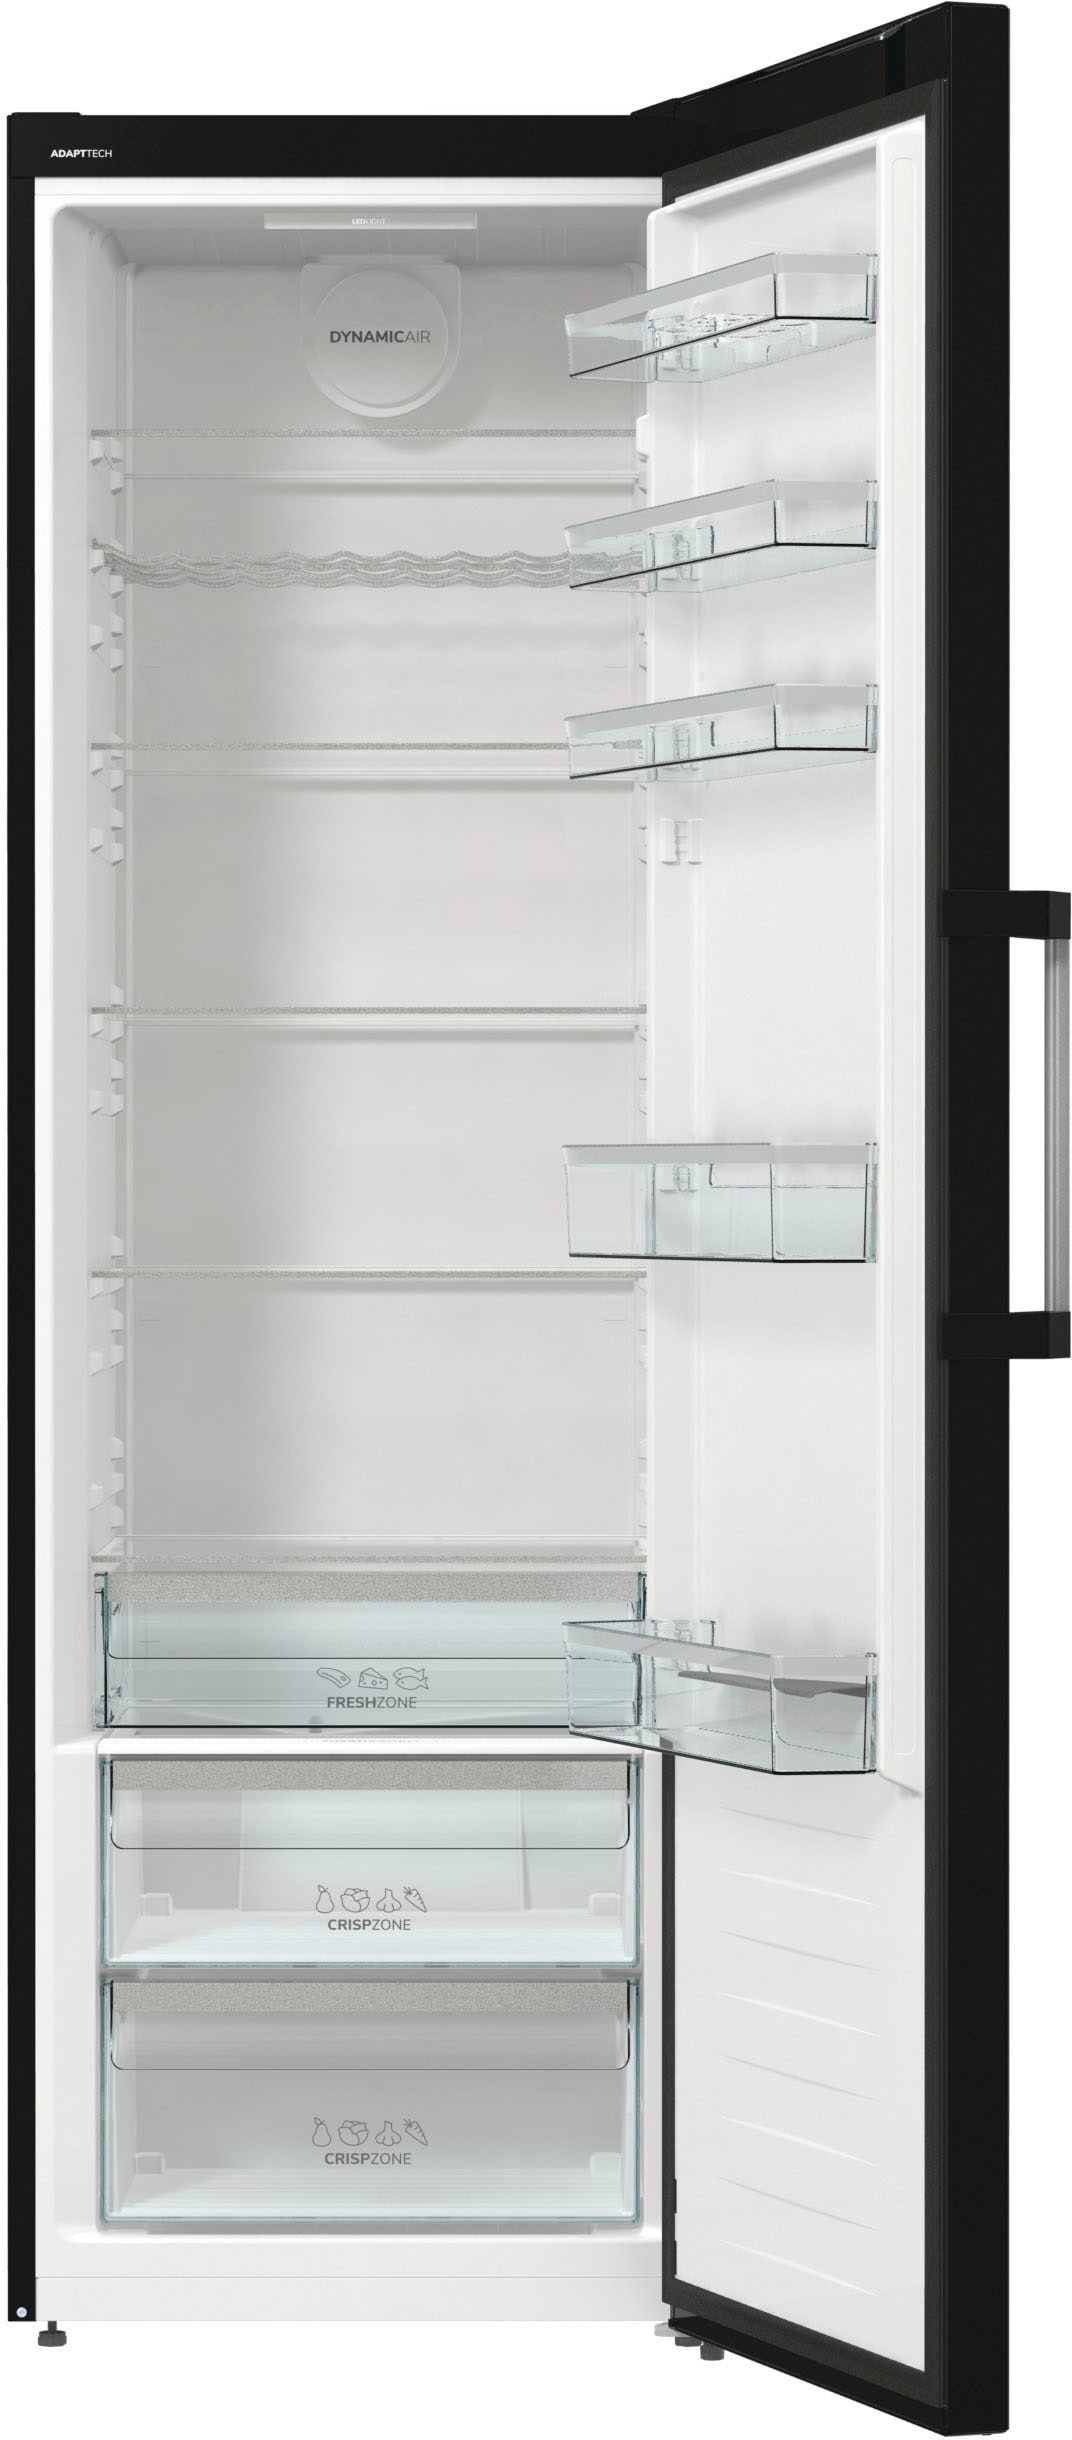 GORENJE Kühlschrank, R619DABK6, 185 cm hoch, 59,5 cm breit jetzt im OTTO  Online Shop